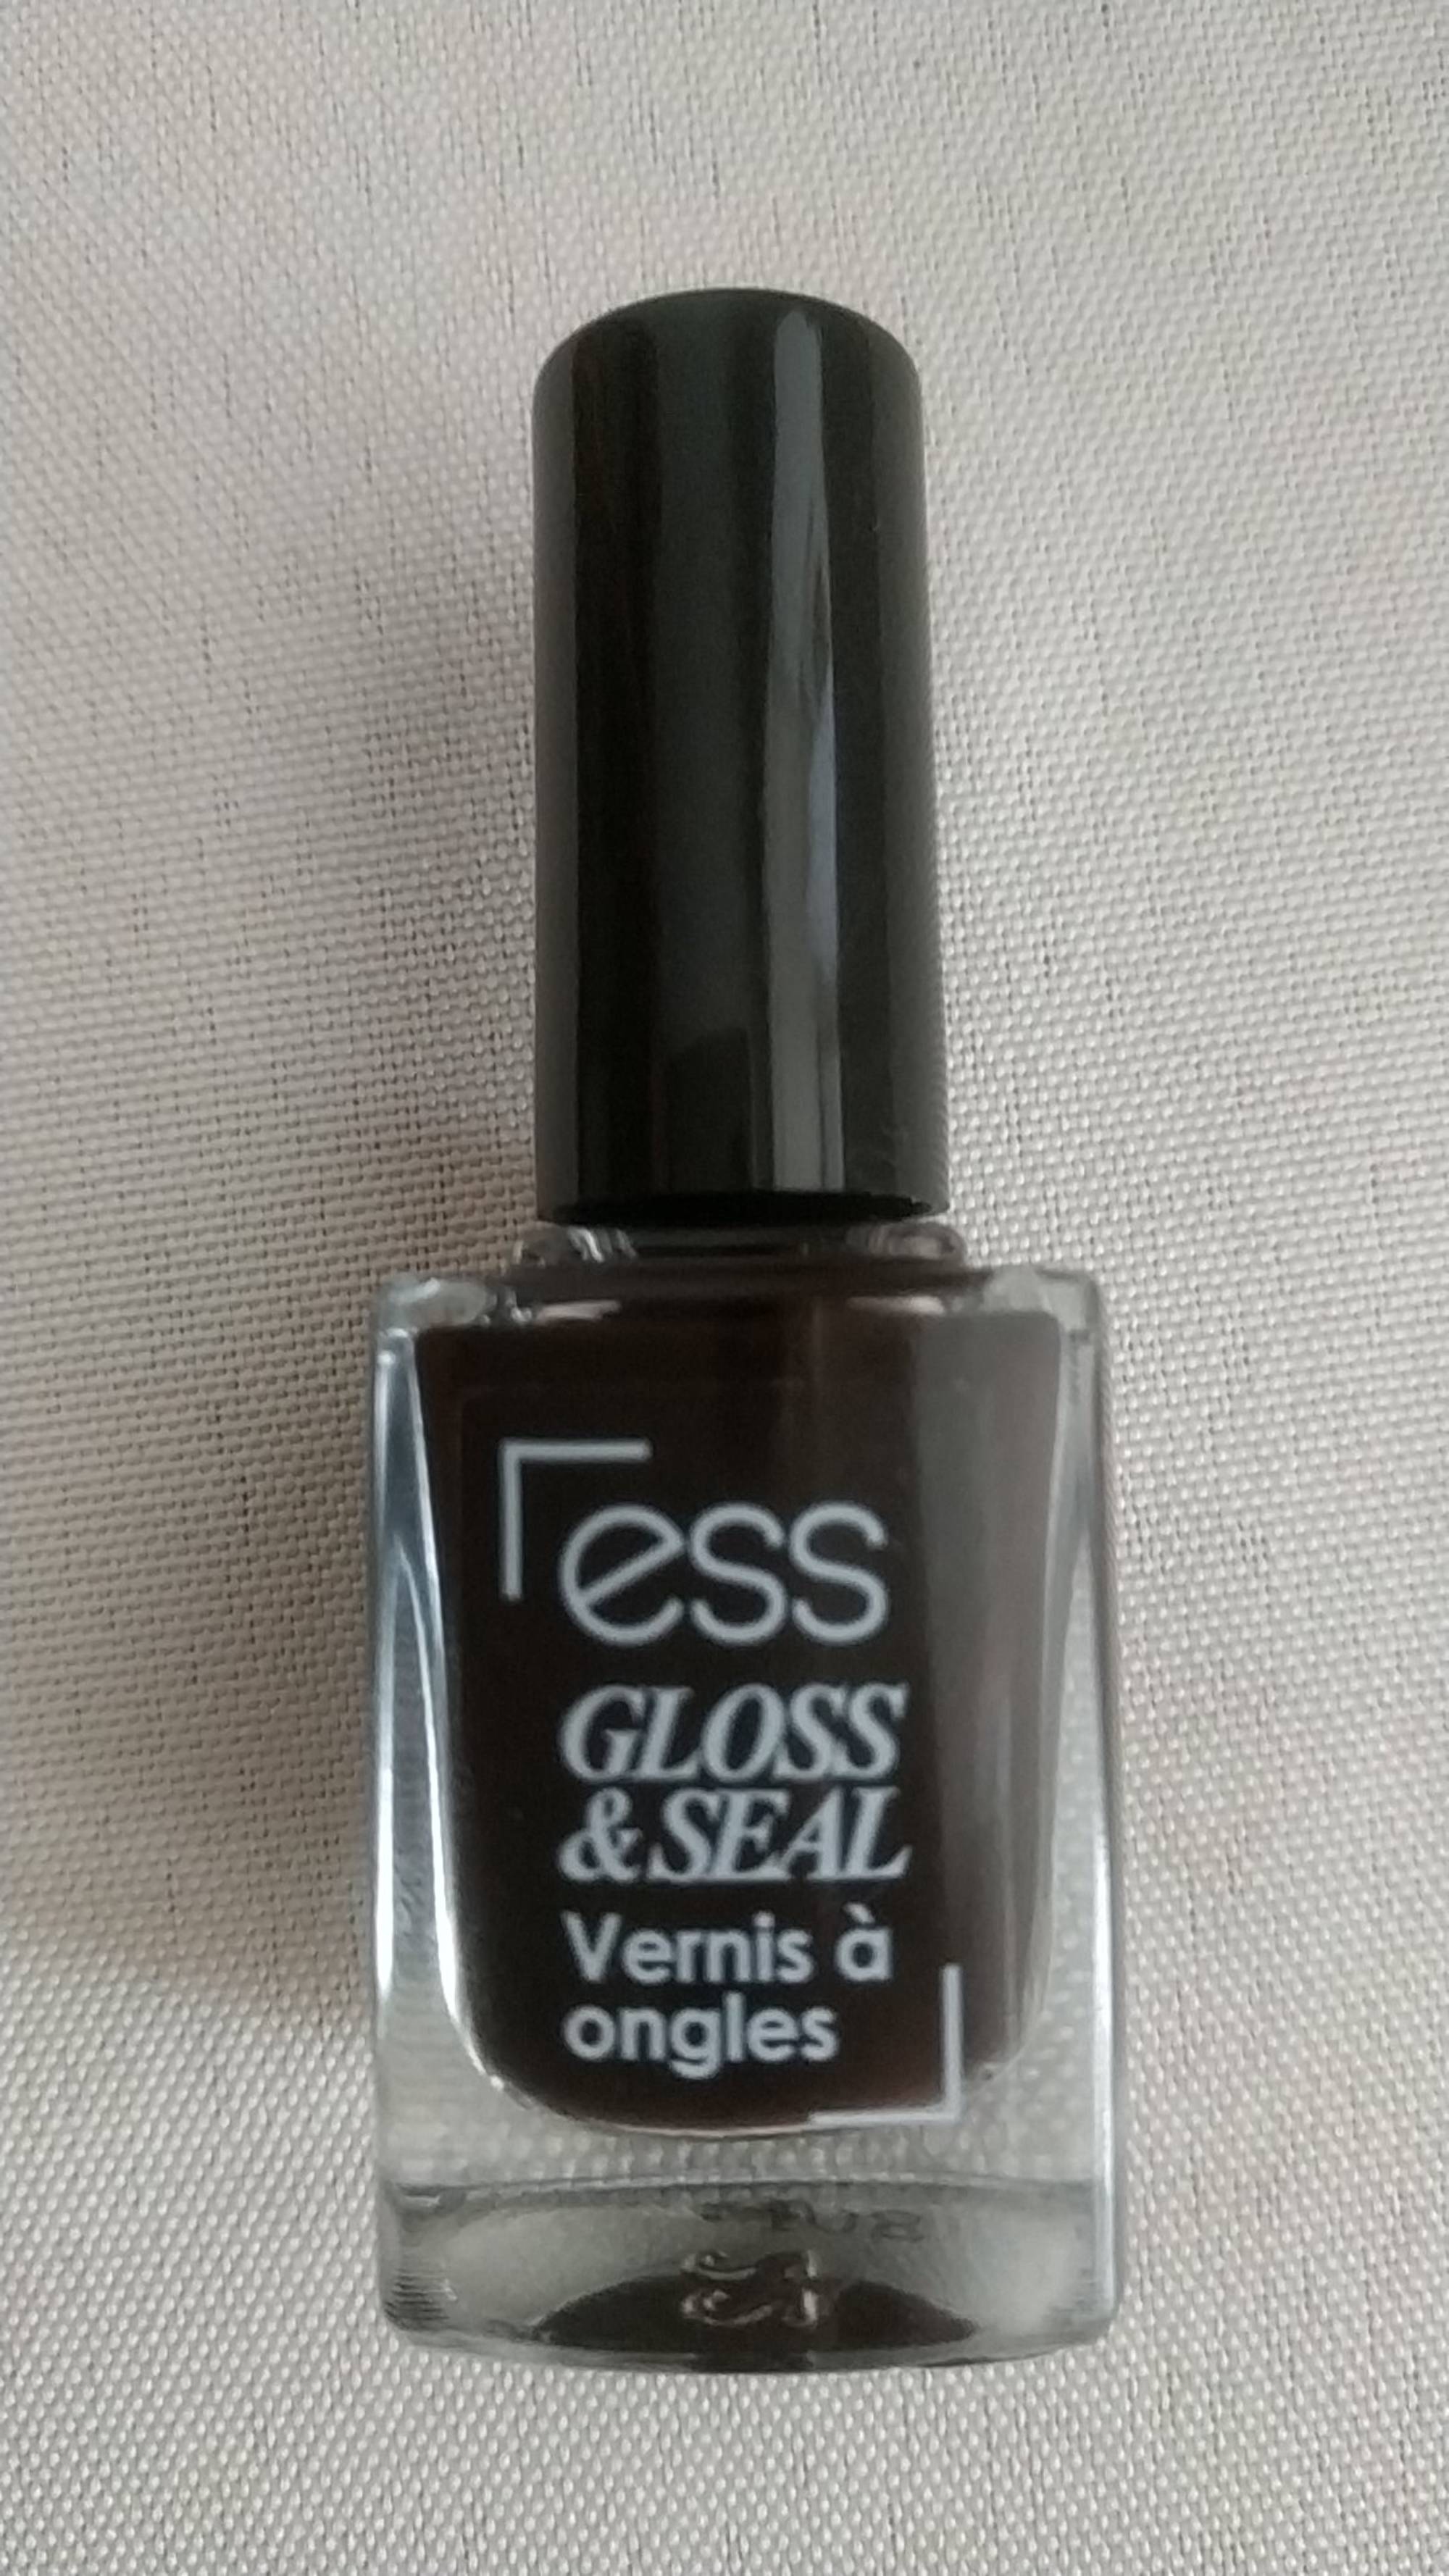 ESS - Gloss & seal - Vernis à ongles